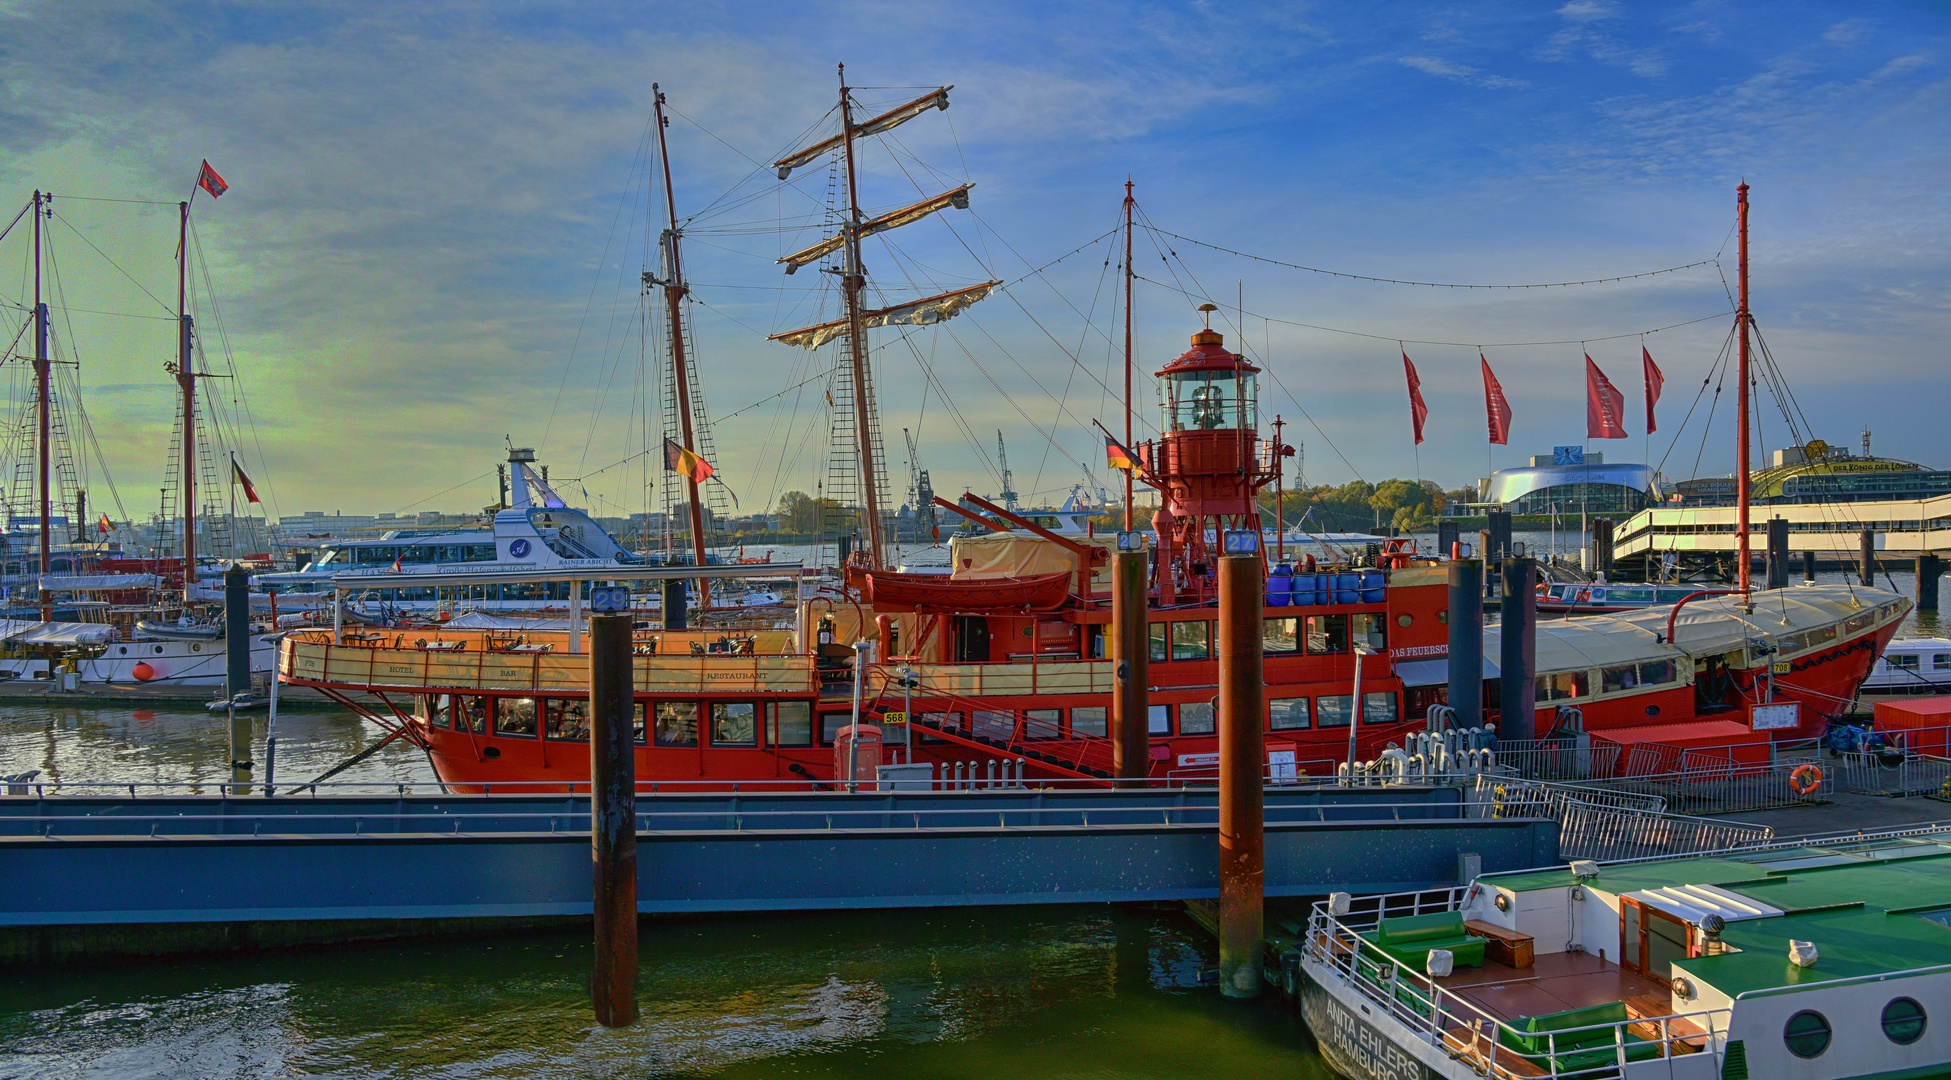 Das Feuerschiff Hamburg